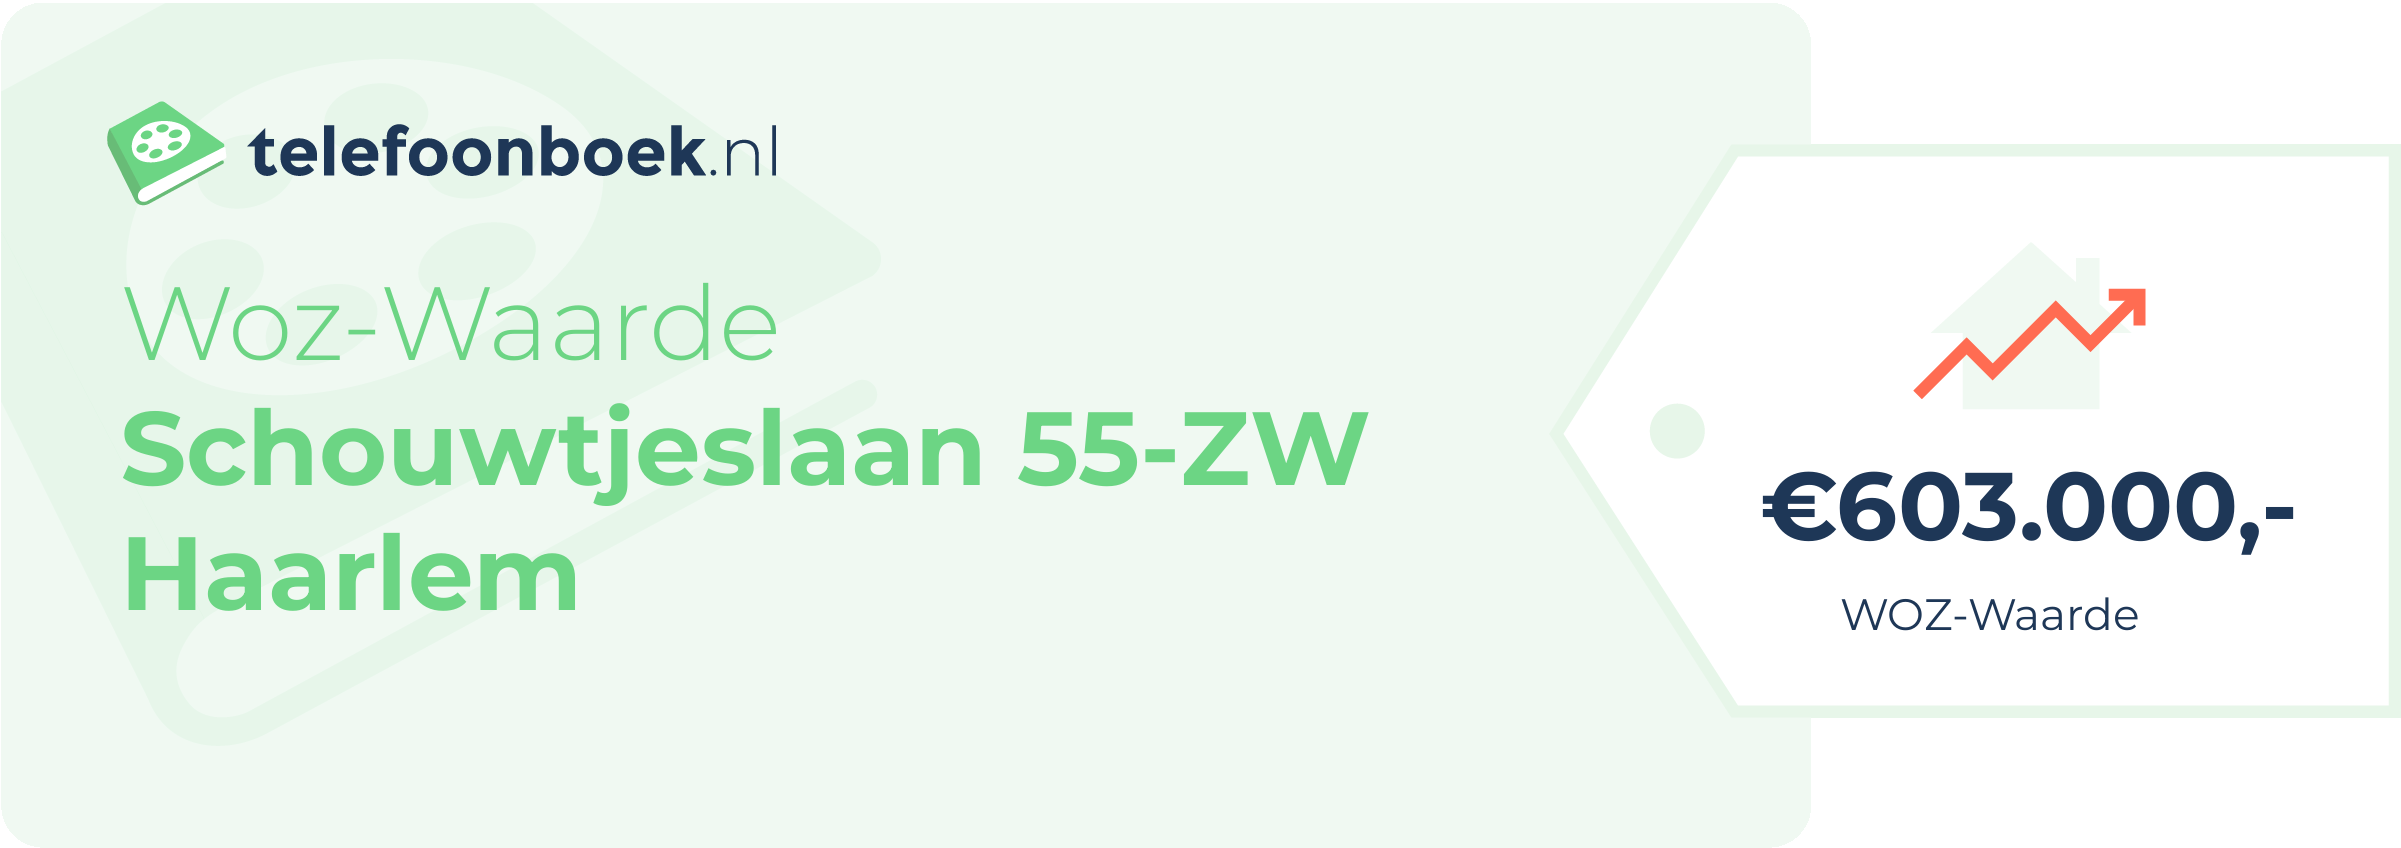 WOZ-waarde Schouwtjeslaan 55-ZW Haarlem